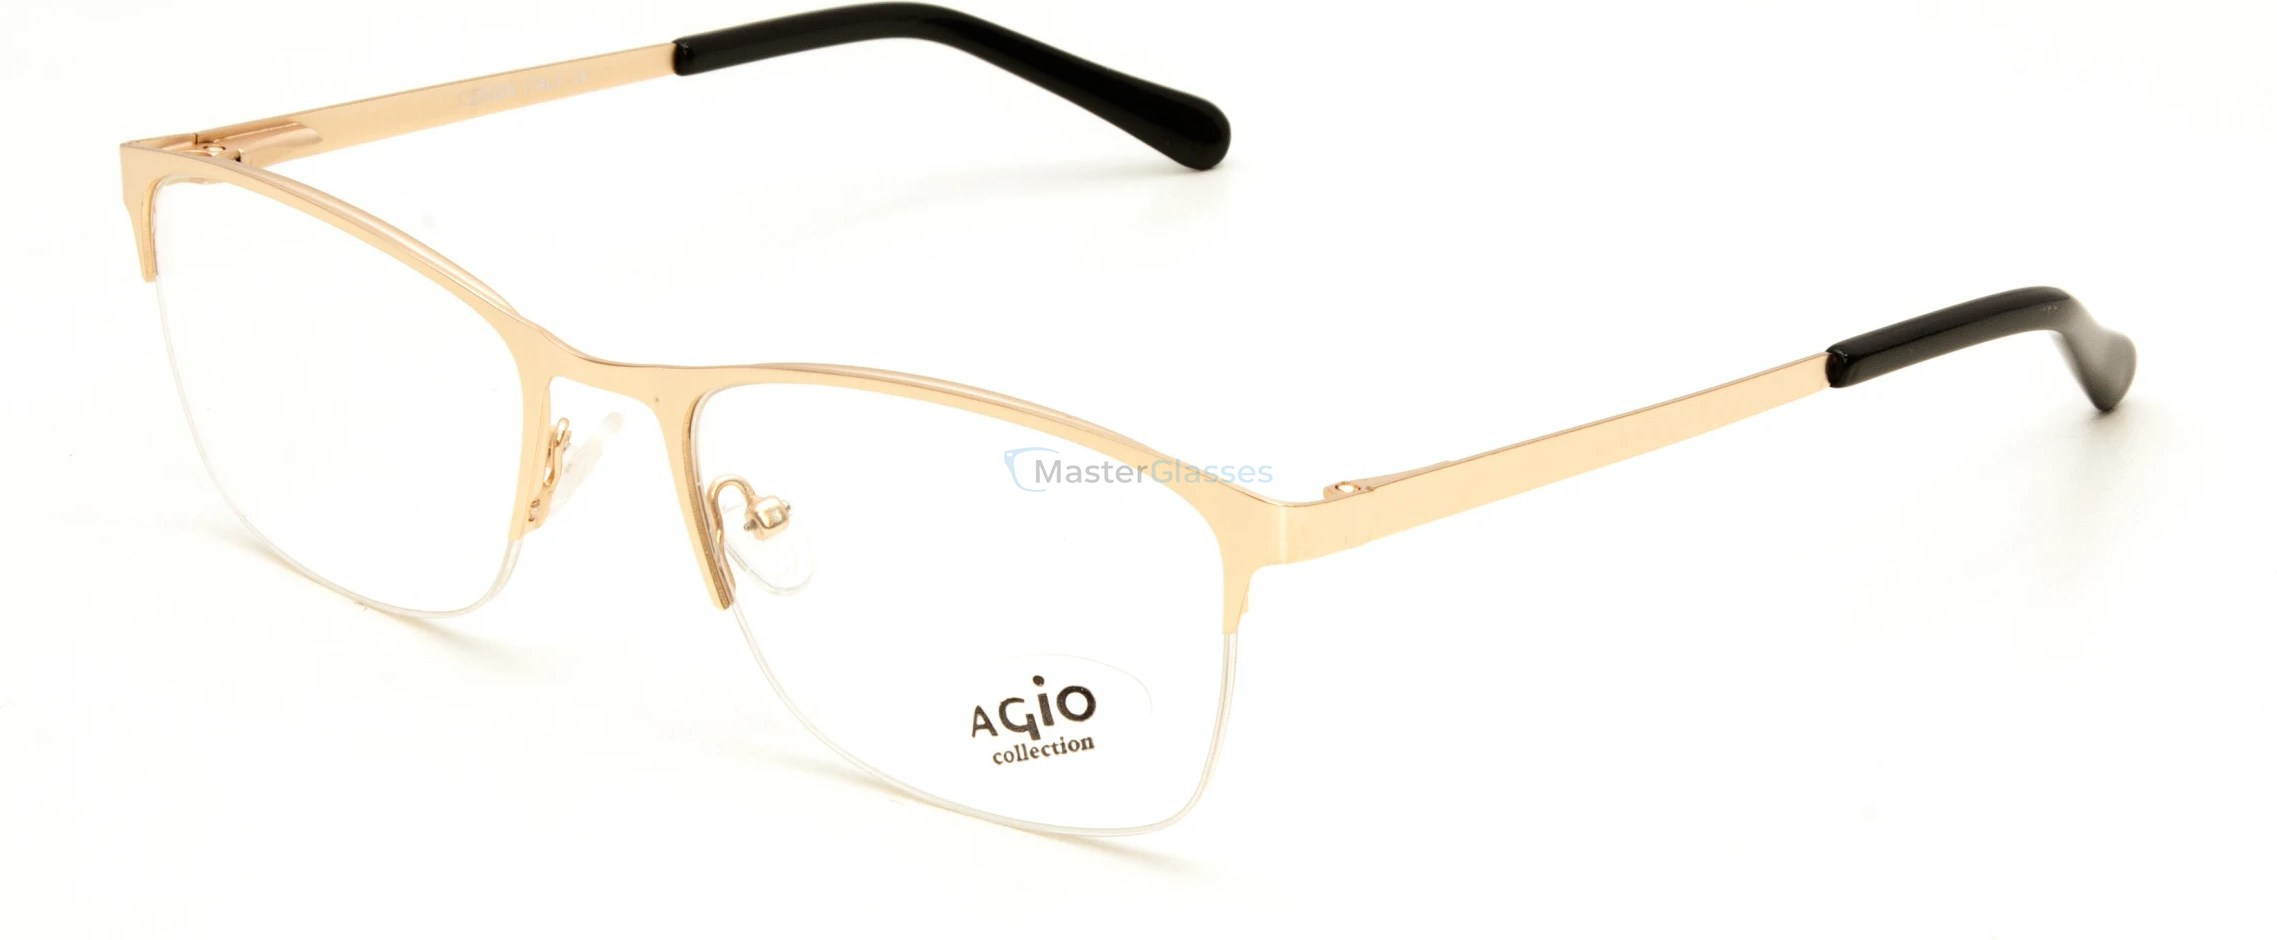  AGIO AG 70117 c3